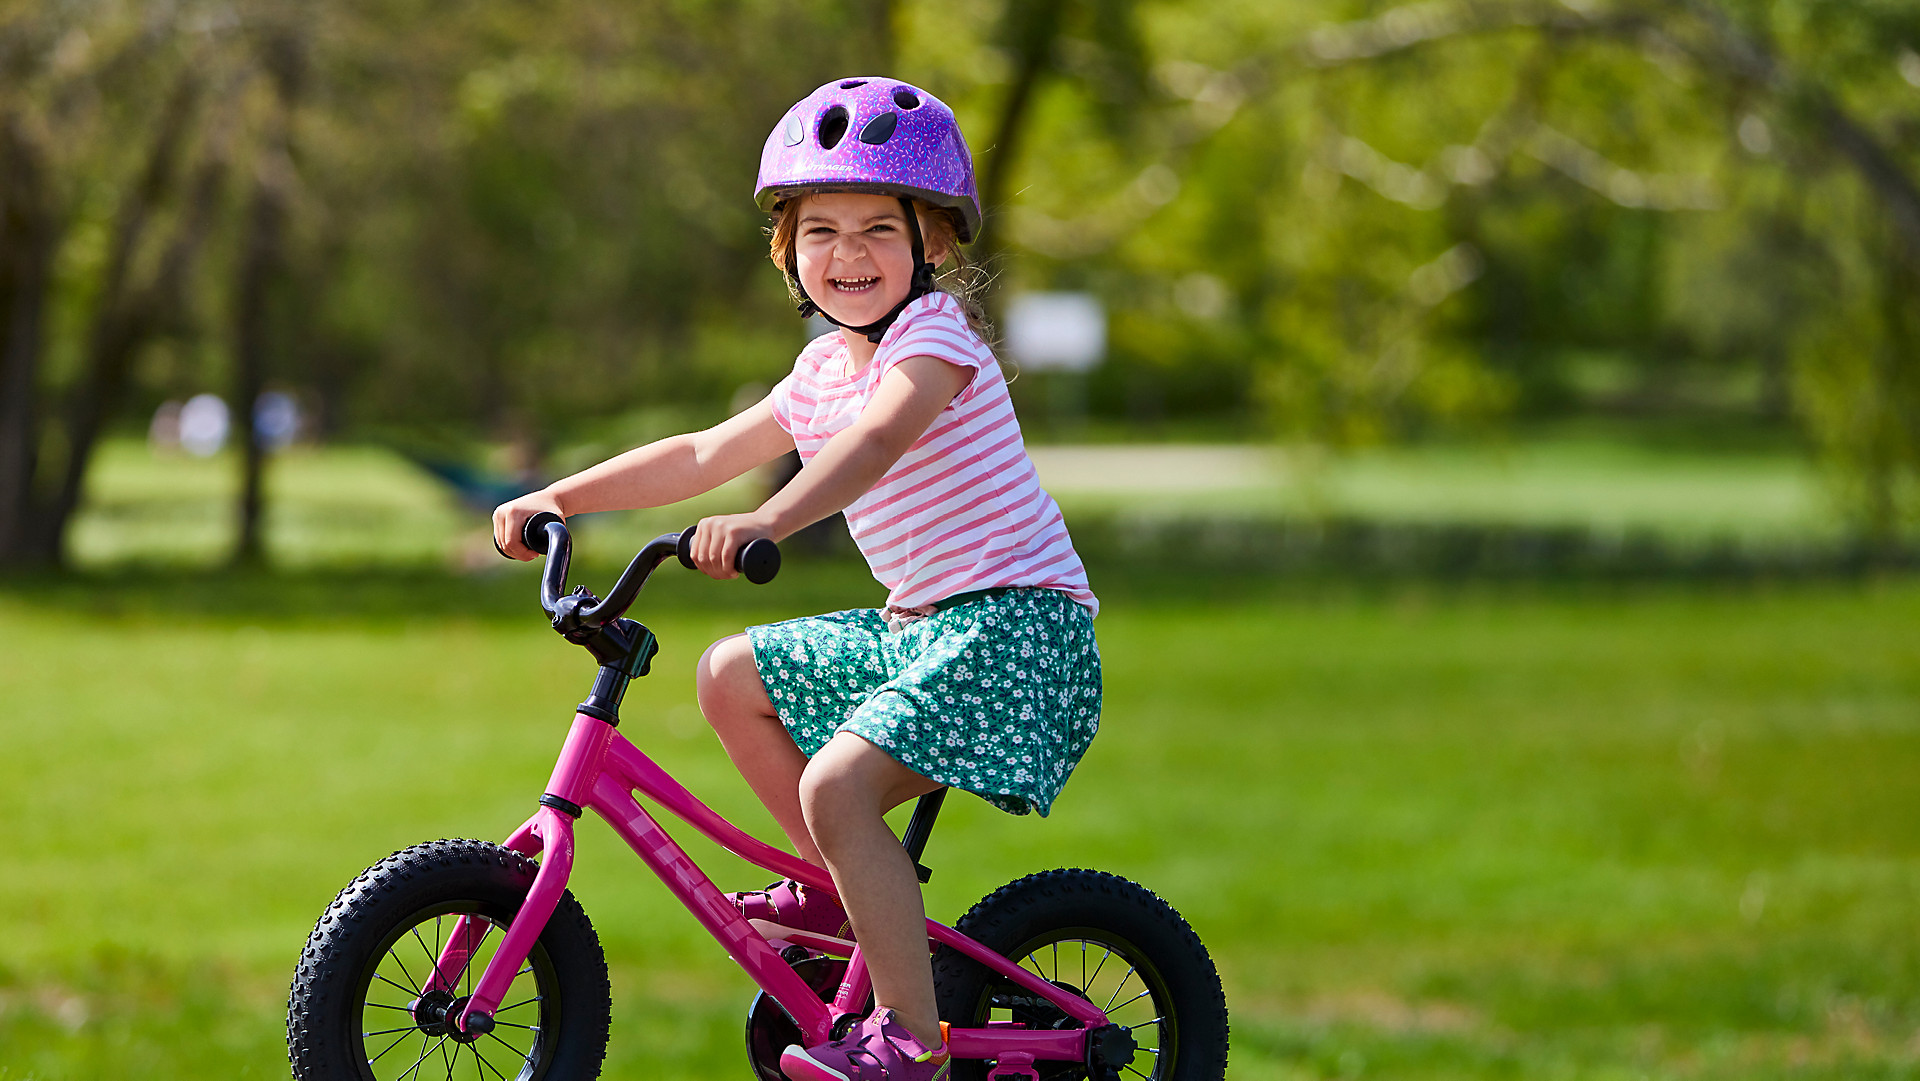 16" Kinder Fahrrad Reiten Fahrrad Kids Fahrrad mit Stabilisatoren Children Bike 